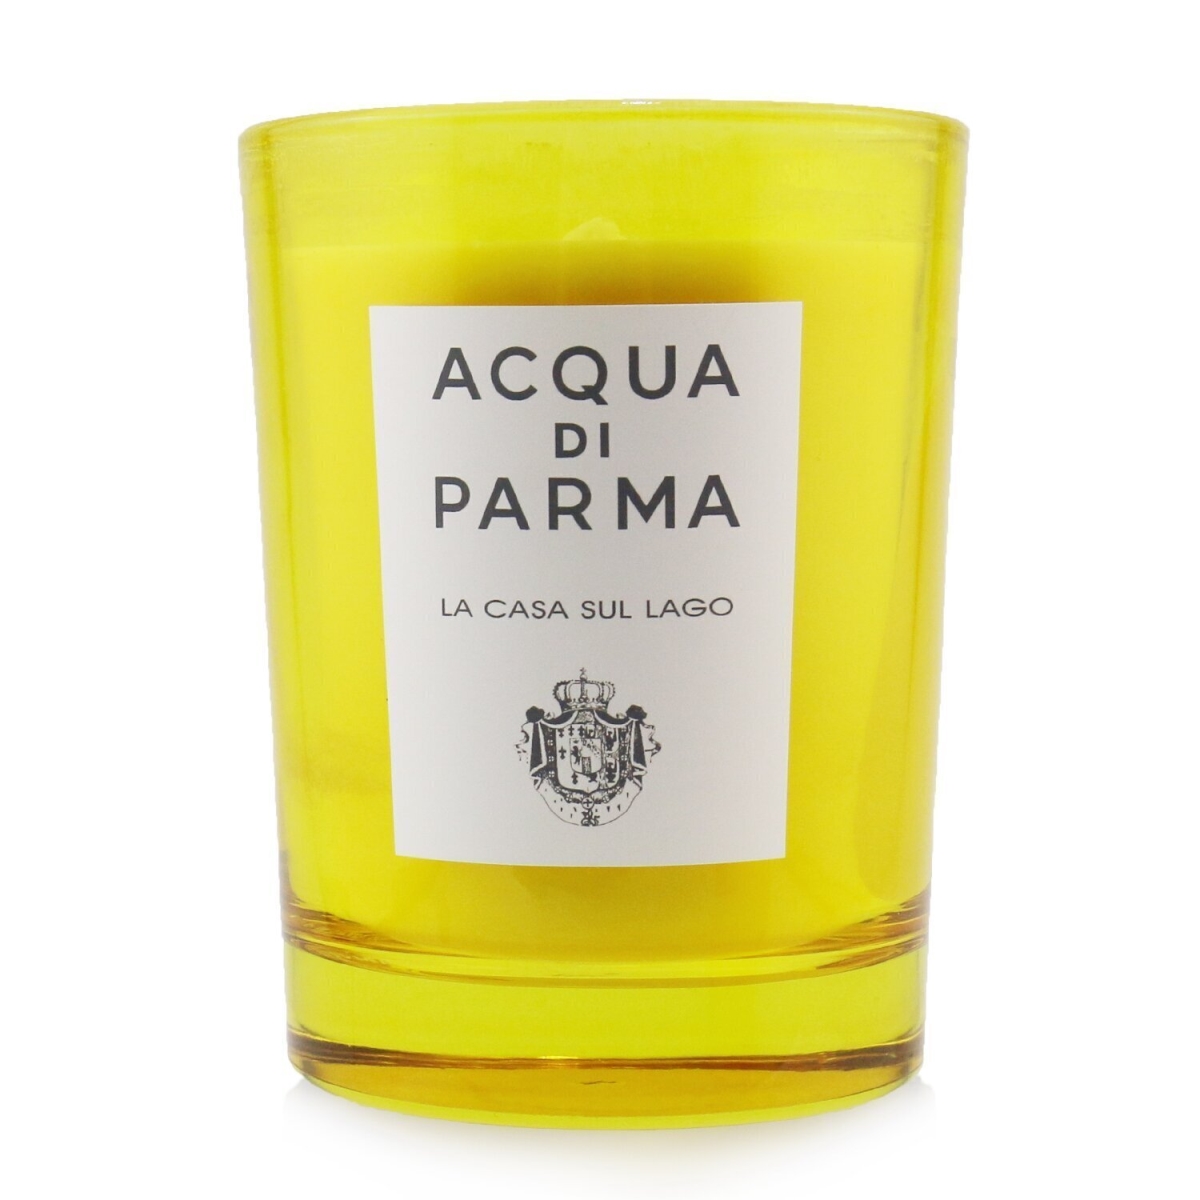 Picture of Acqua Di Parma 250316 7.05 oz Scented Candle - La Casa Sul Lago